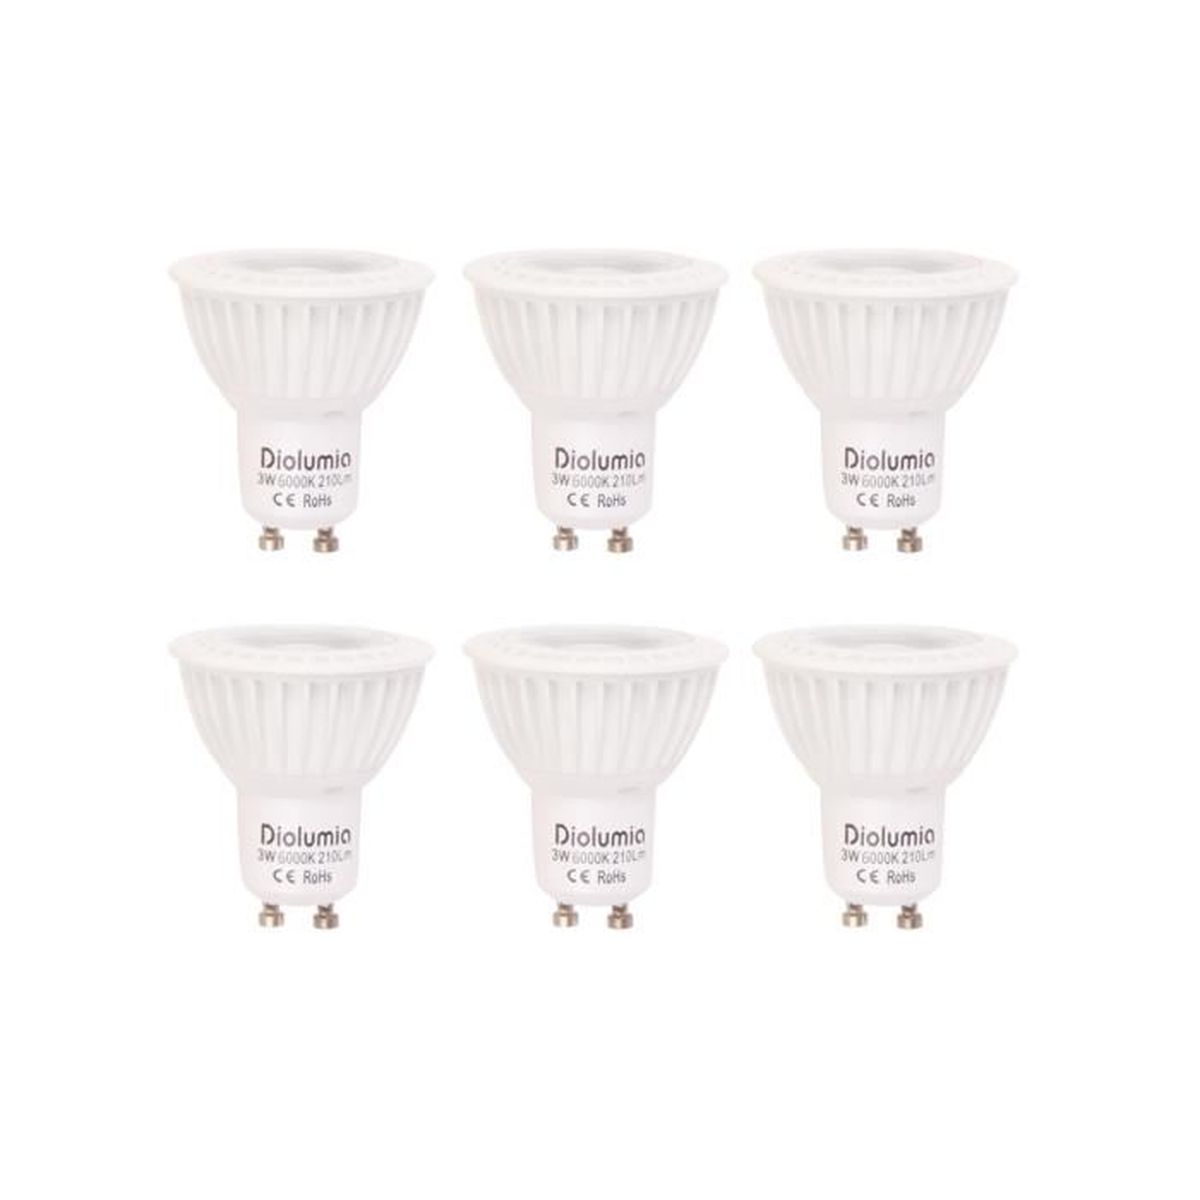 Lot de 10 Blanc chaud 3000K Ampoule LED GU10 /ø50x57-3W avec une luminosit/é de 25W 210 lm 110/° Angle de faisceau ZoneLED SET